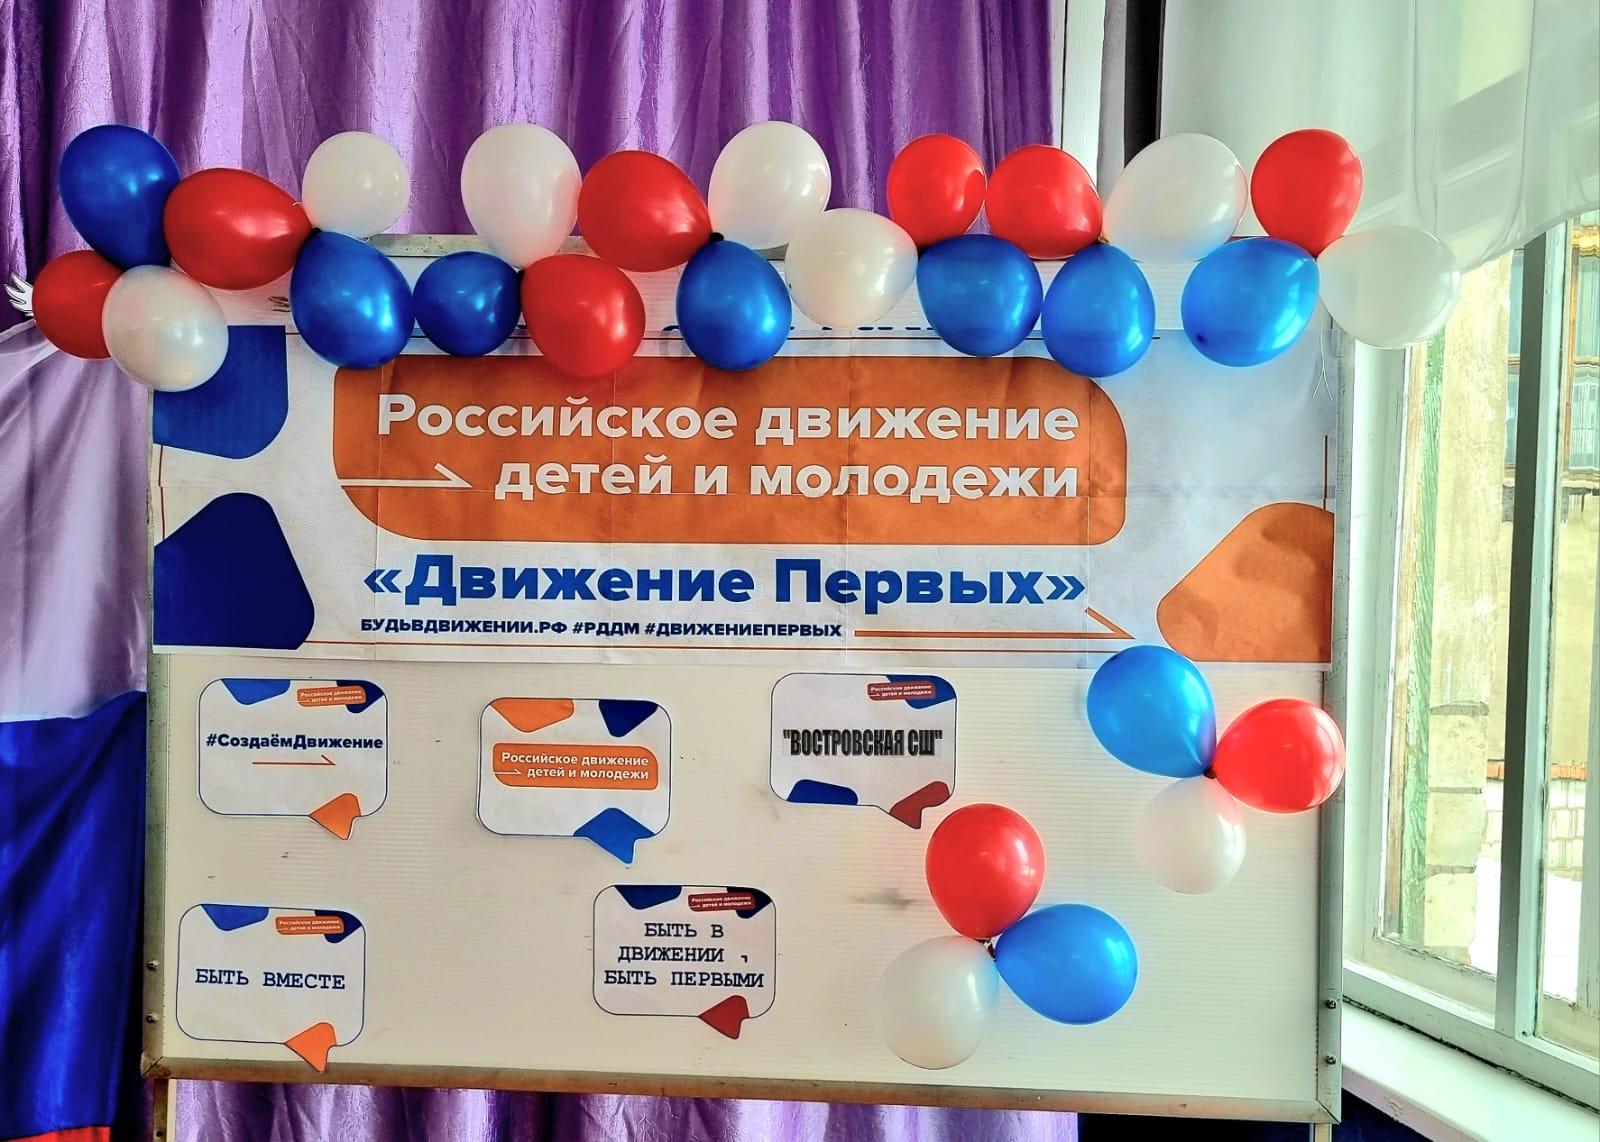 Состоялось торжественное открытие первичного отделения Российского движения детей и молодёжи «Движение первых&amp;quot;.